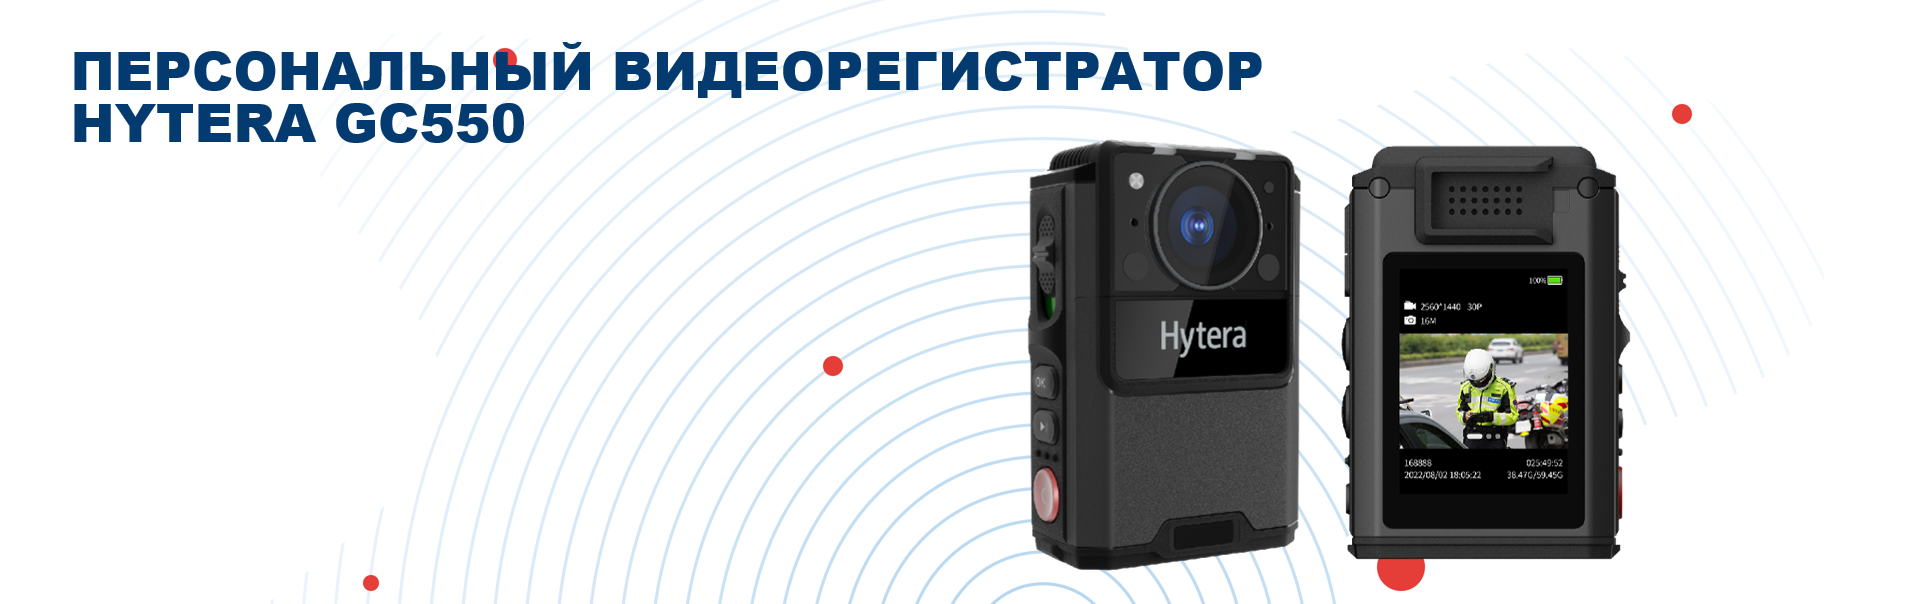 Персональный видеорегистратор Hytera GC550